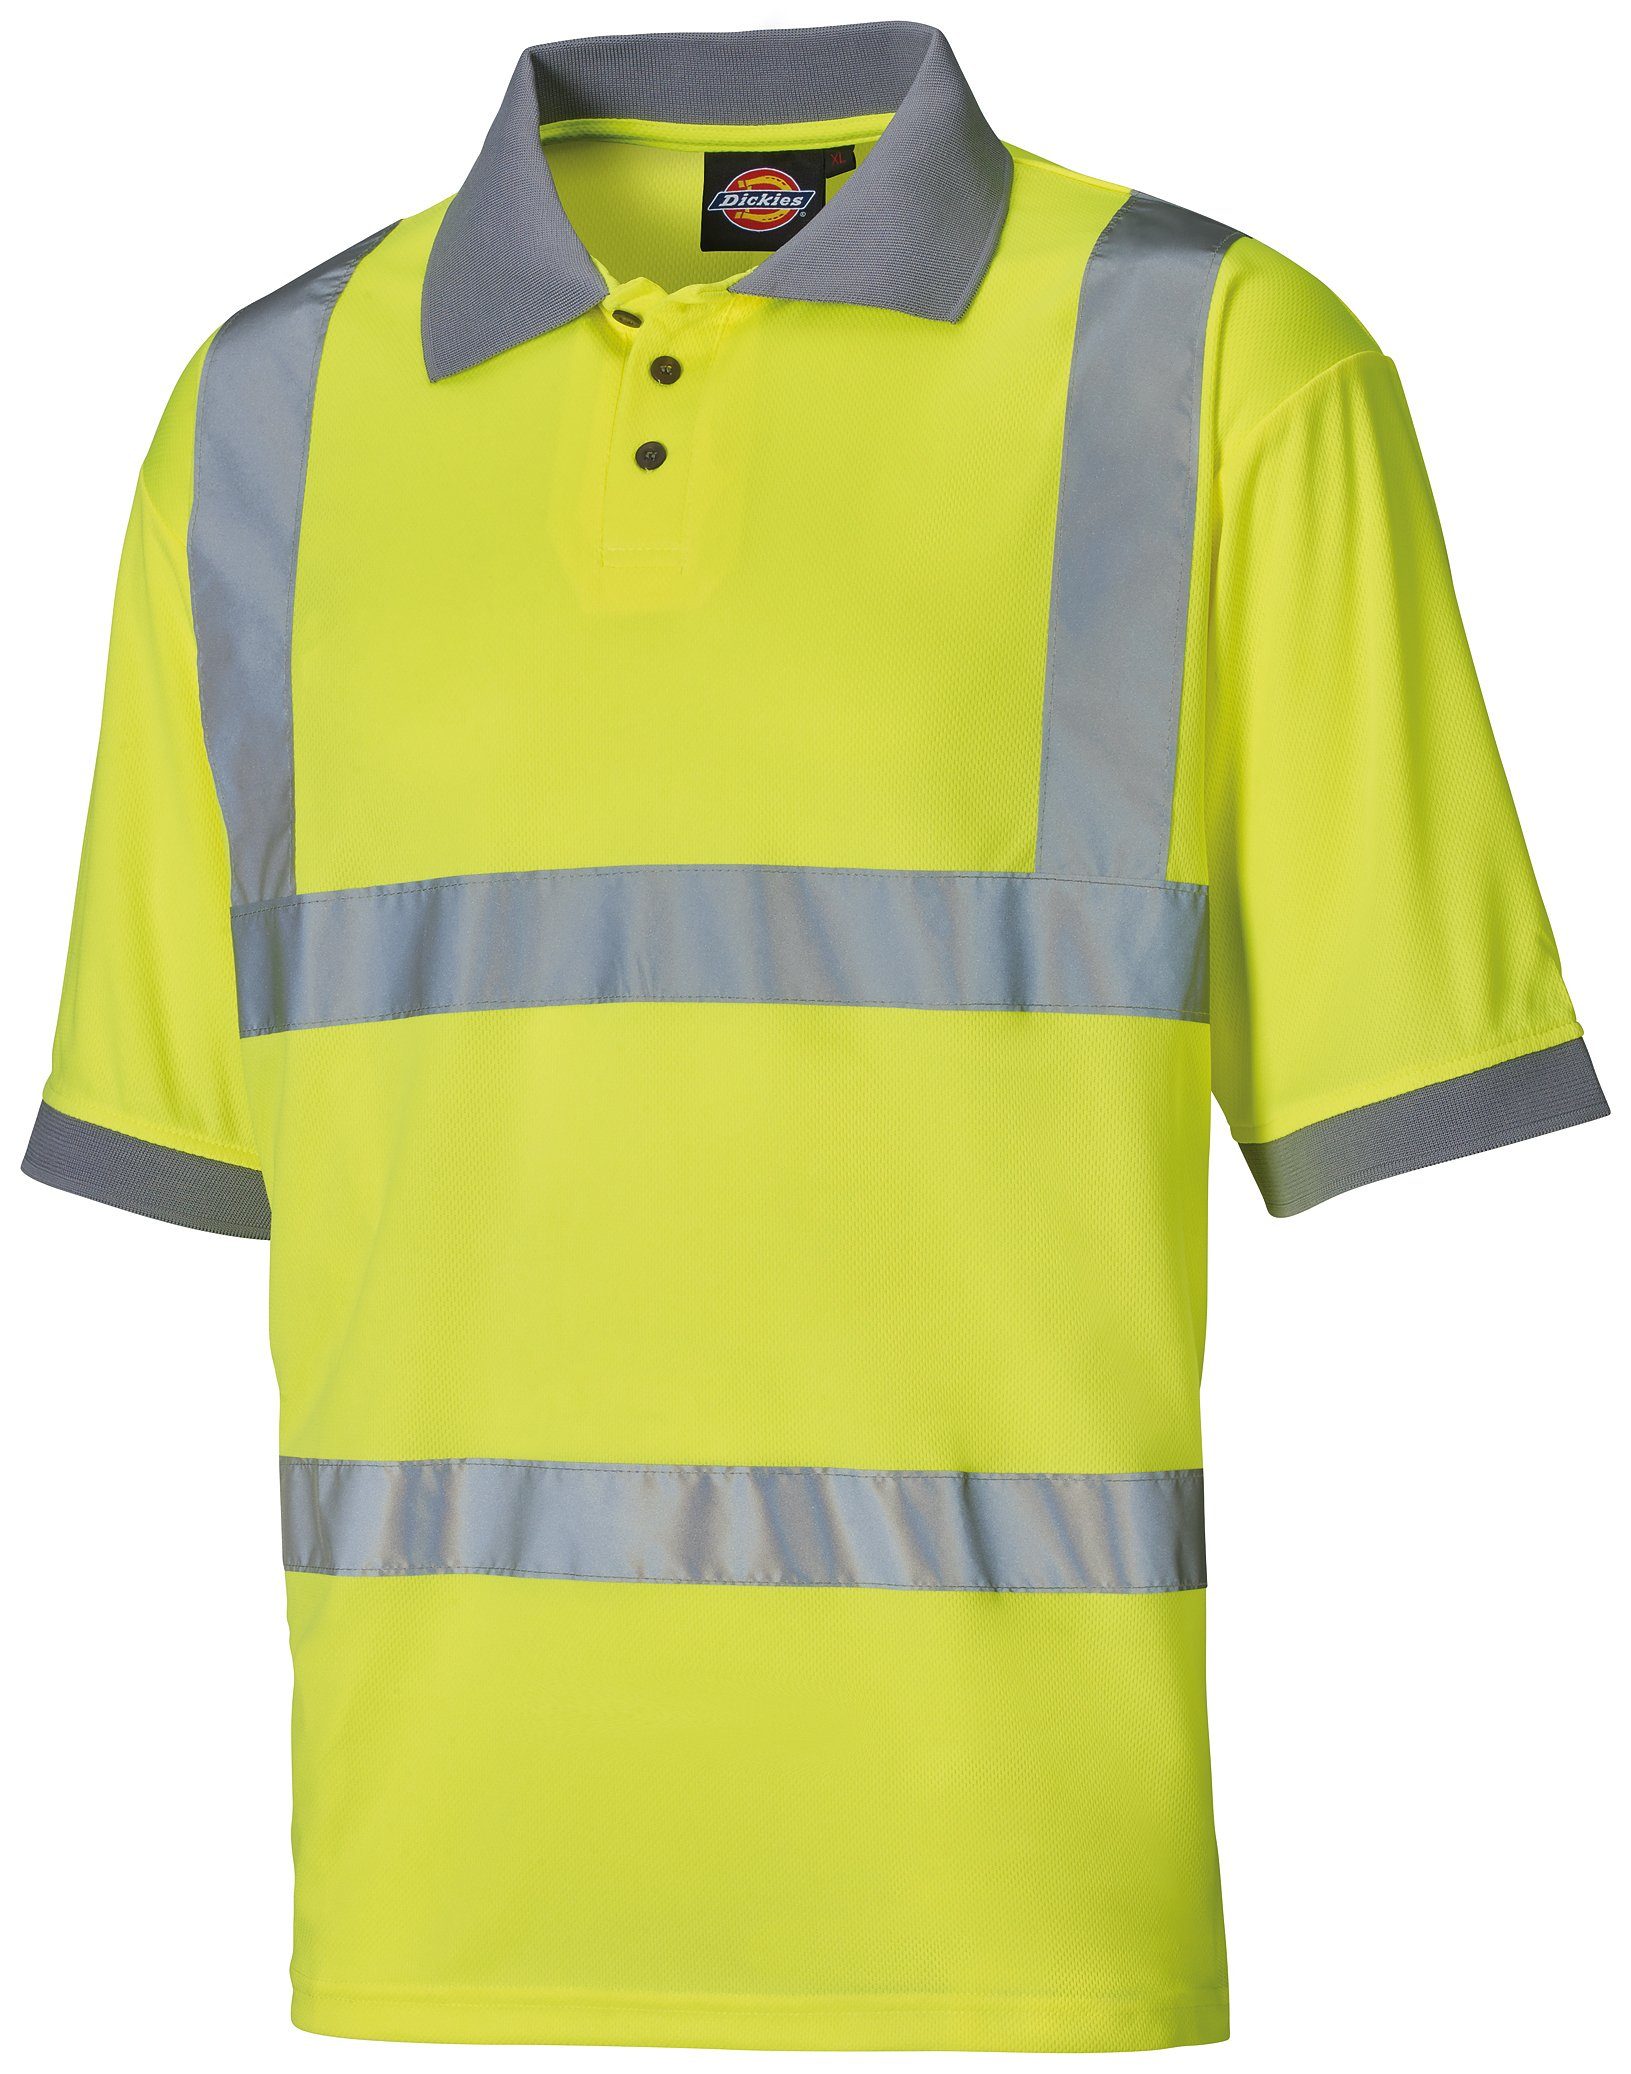 Warnschutz-Shirt Hi Poloshirt Vis Dickies EN471 klassifiziert SA22075